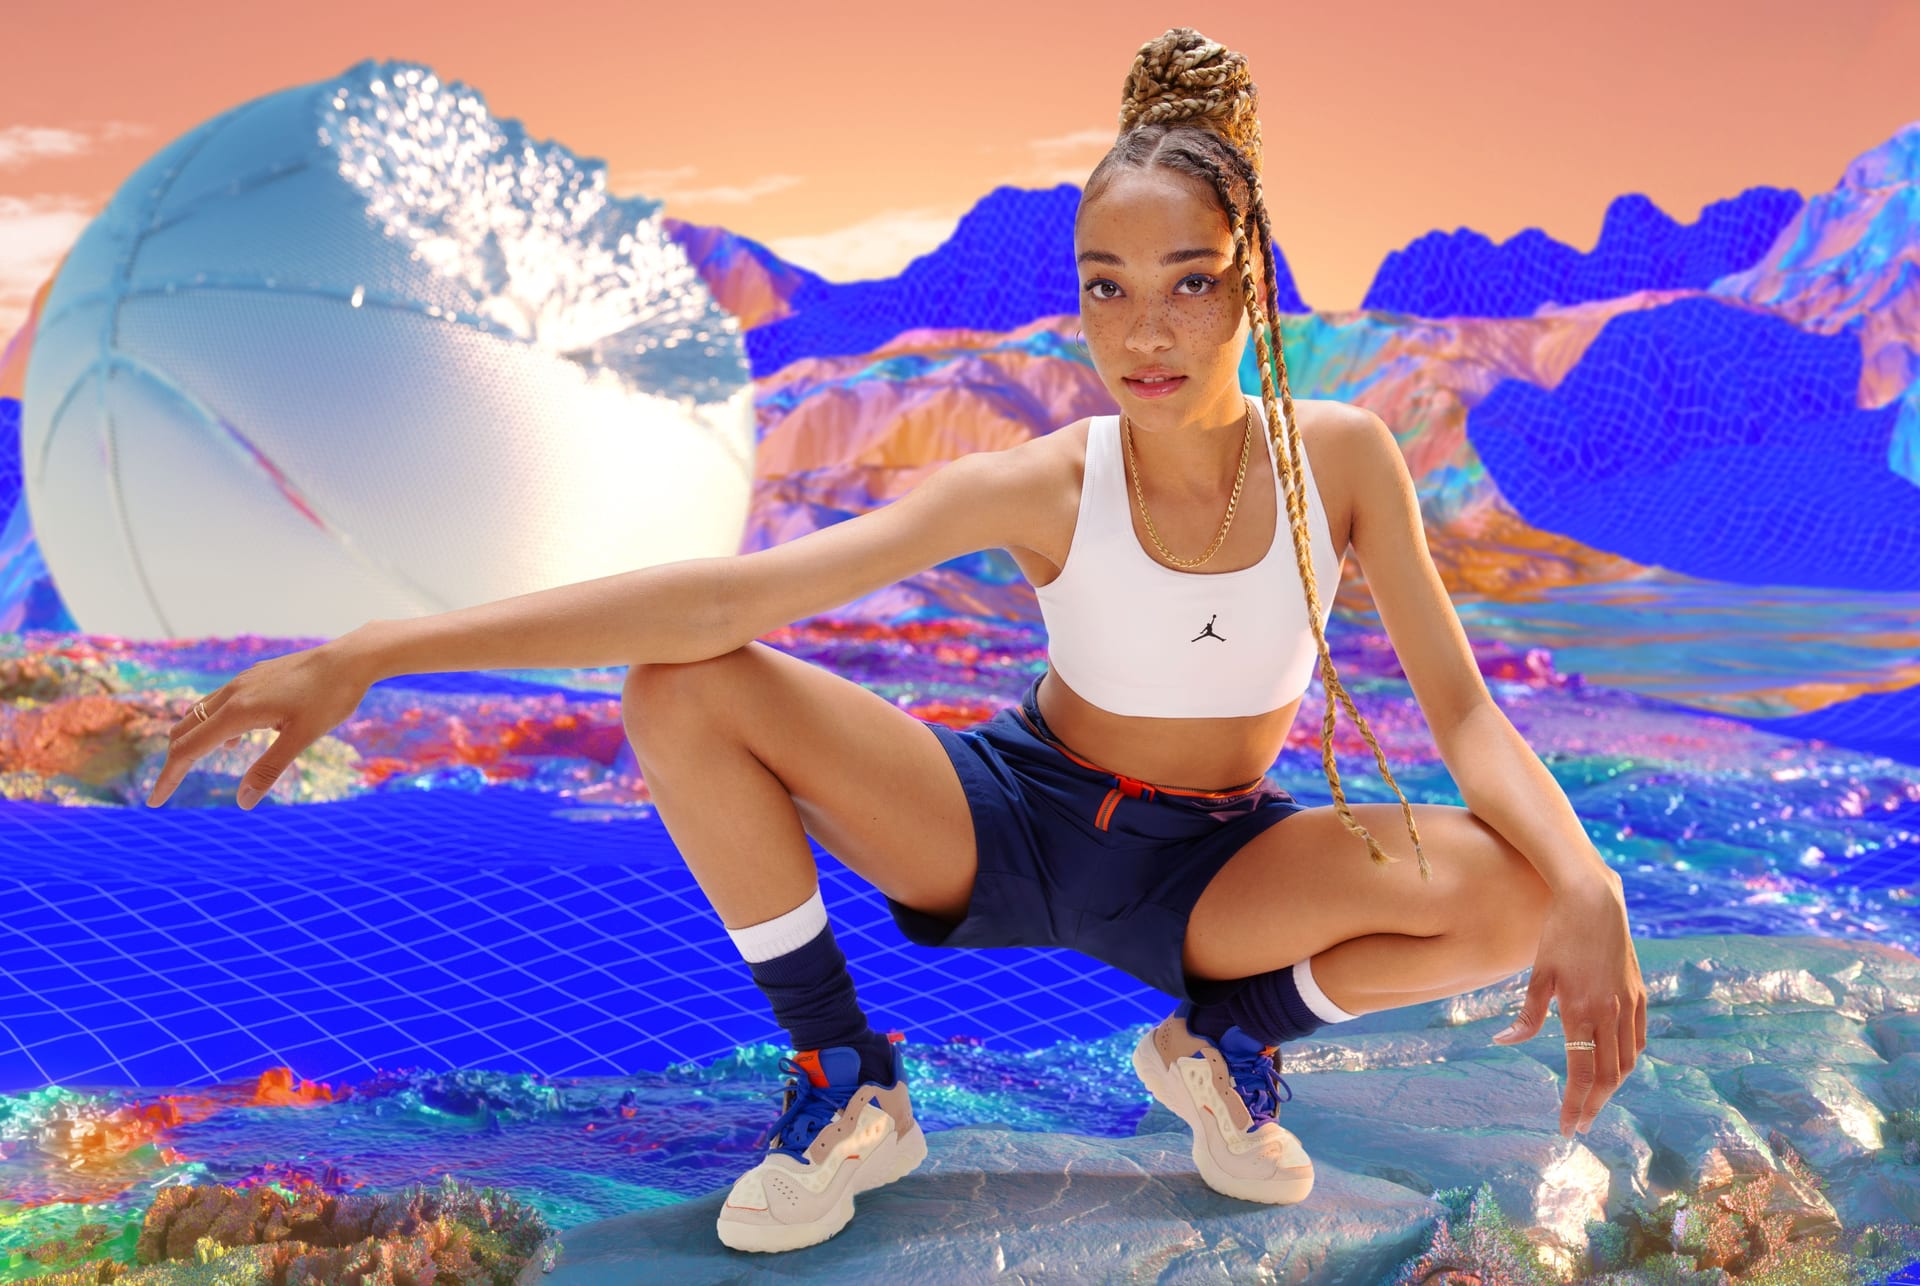 Nike Jordan Jumpman Womens Medium-Support 1-Piece Pad Sports Bra